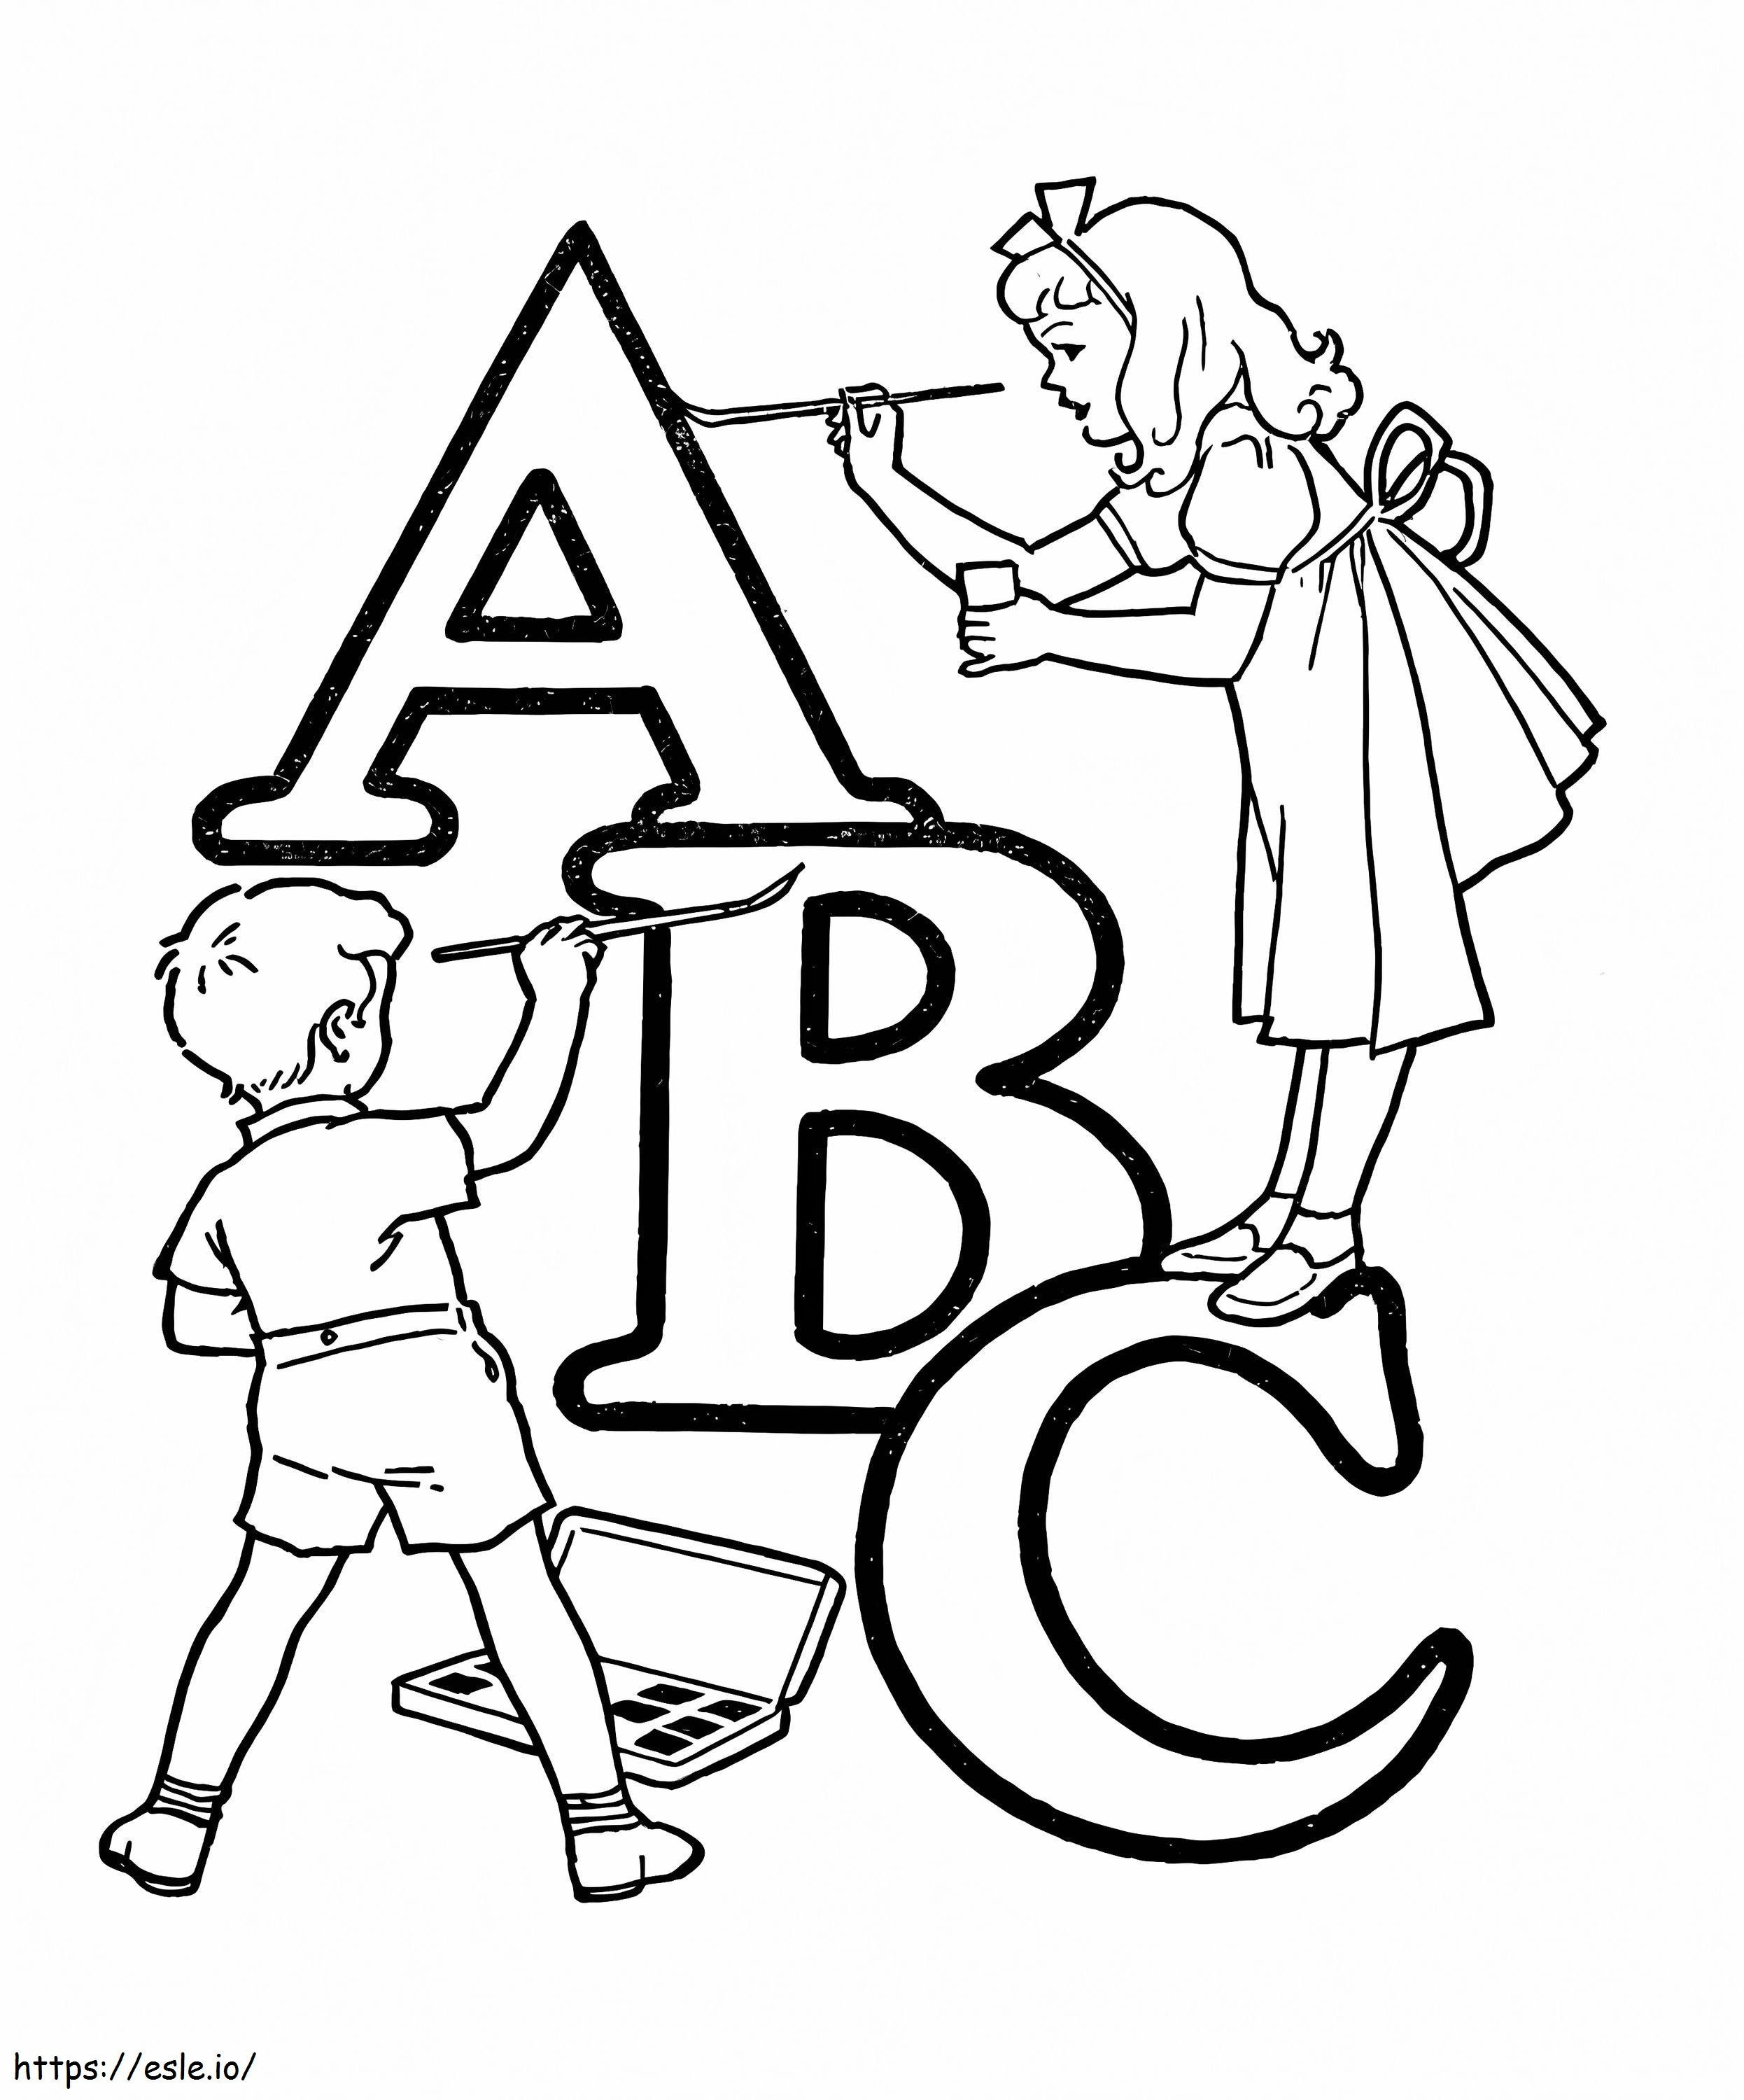 Copii cu ABC de colorat